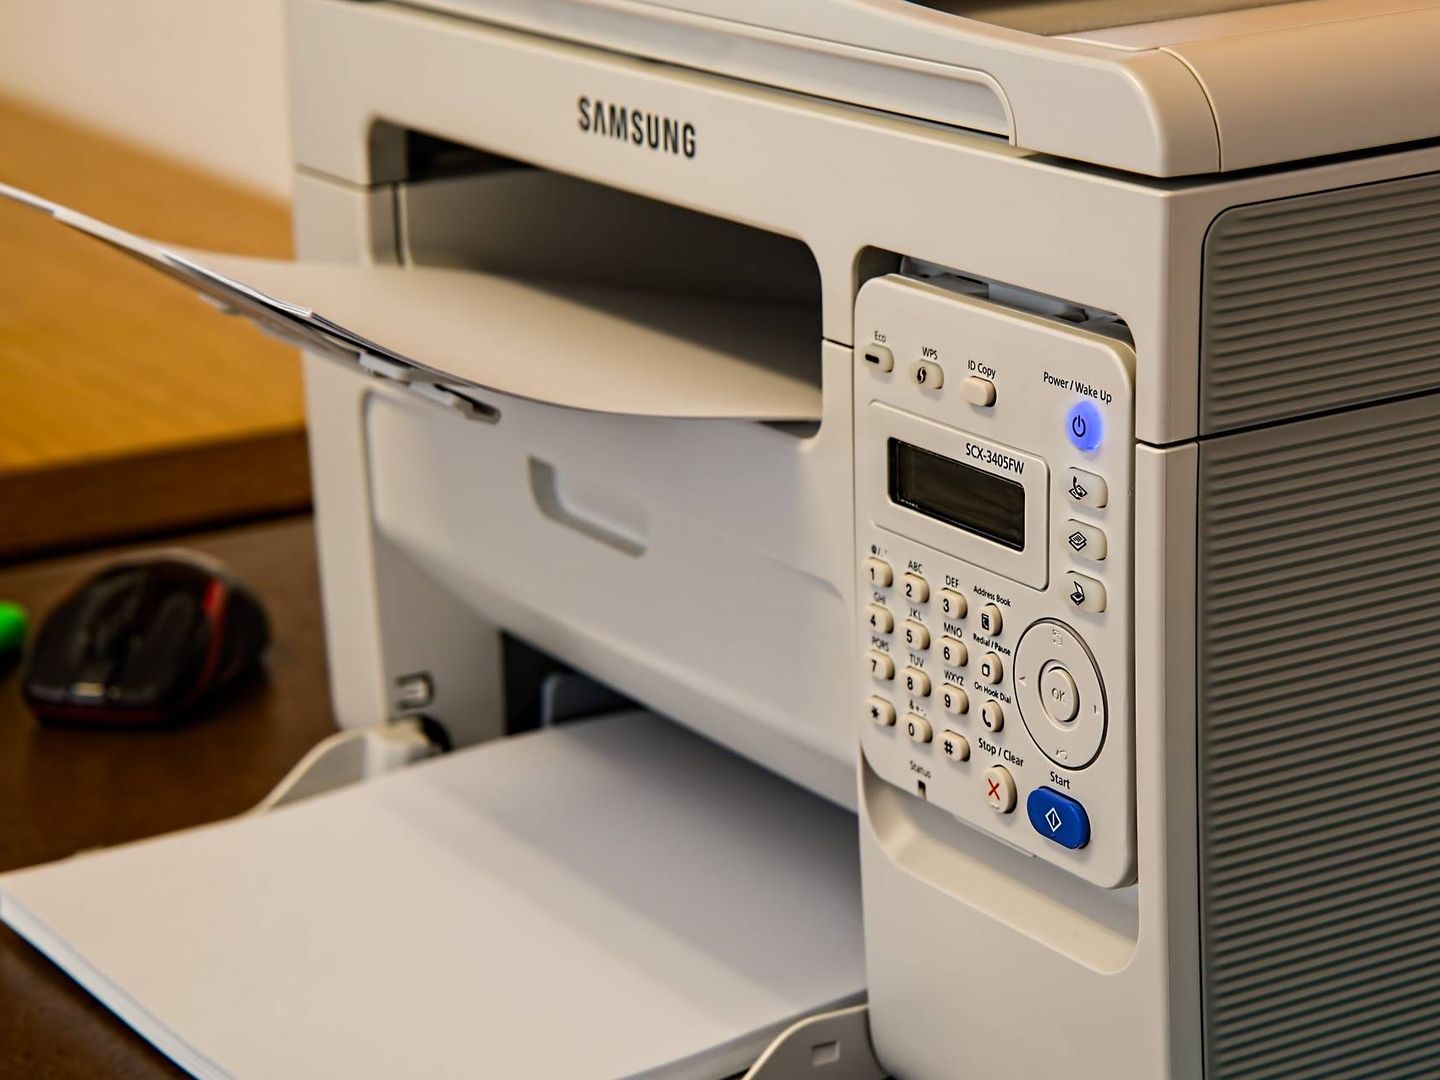 Según el modelo, las impresoras se pueden conectar a redes o carpetas compartidas. Hay que tener cuidado con qué atributos de los documentos de la bandeja de salida se pueden visionar. (Imagen: Pixabay)